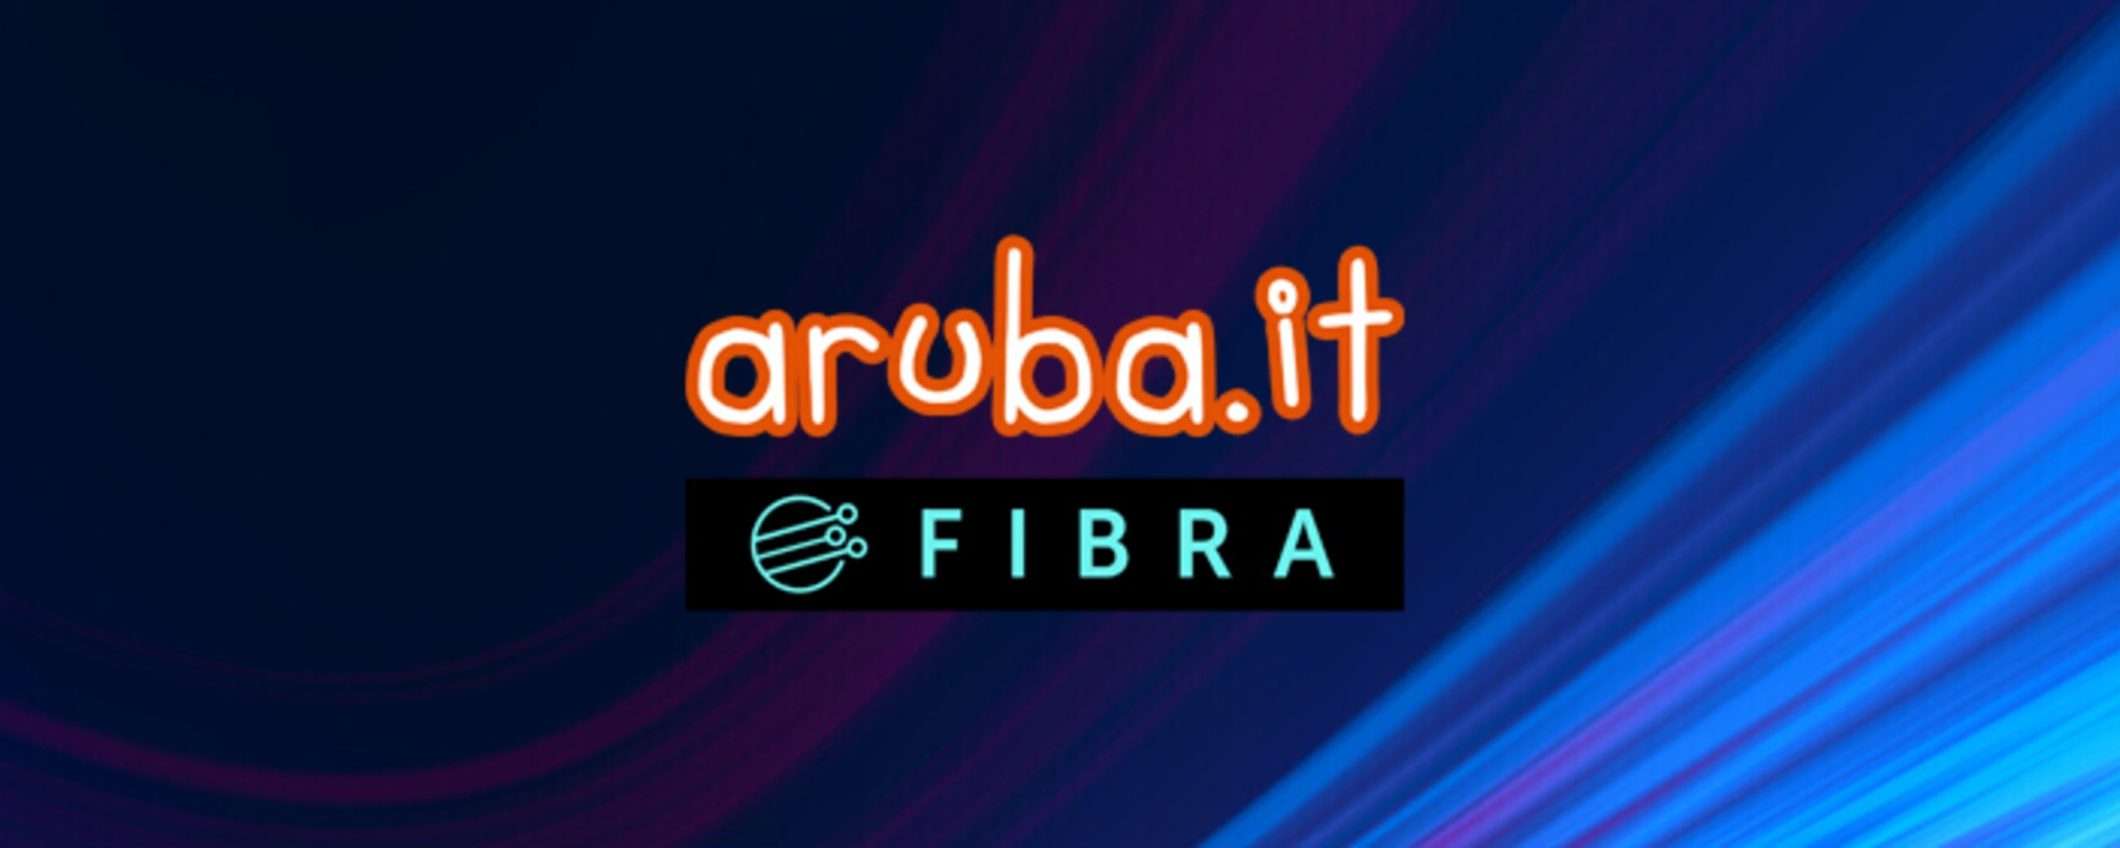 Aruba Fibra: guarda lo sport su DAZN senza blocchi